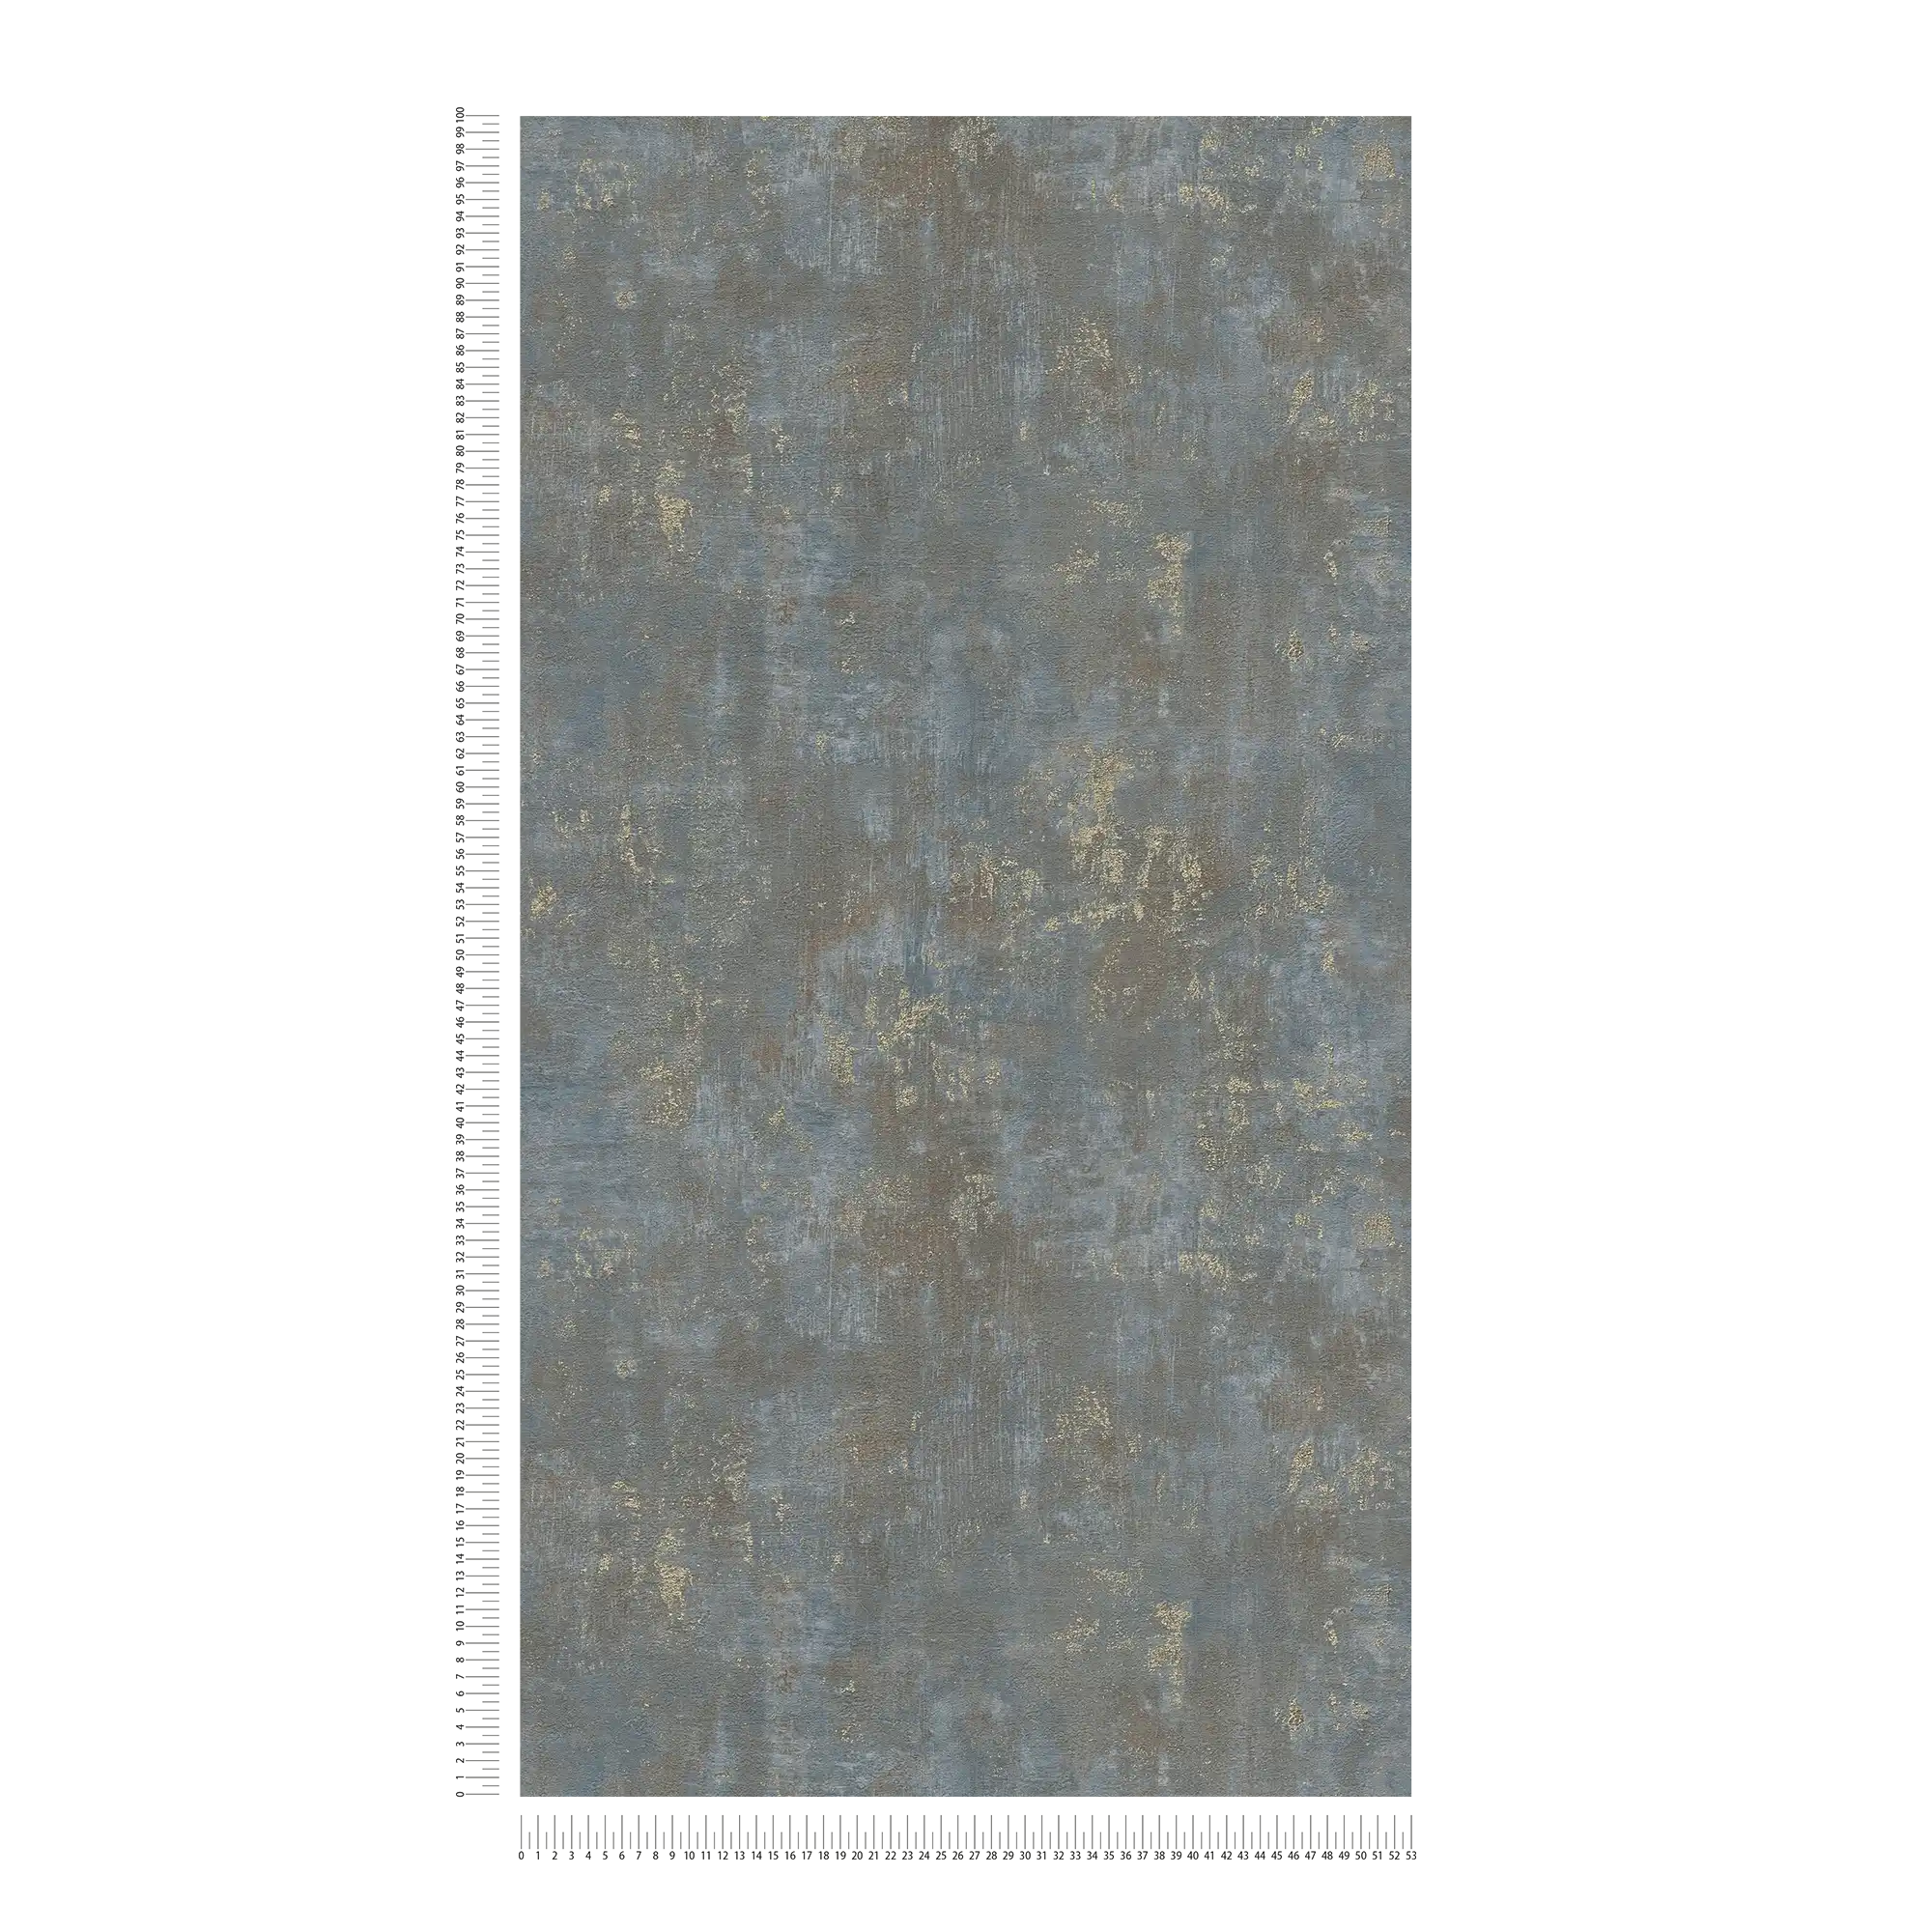             papier peint en papier aspect rouille avec accents métalliques - marron, bleu, or
        